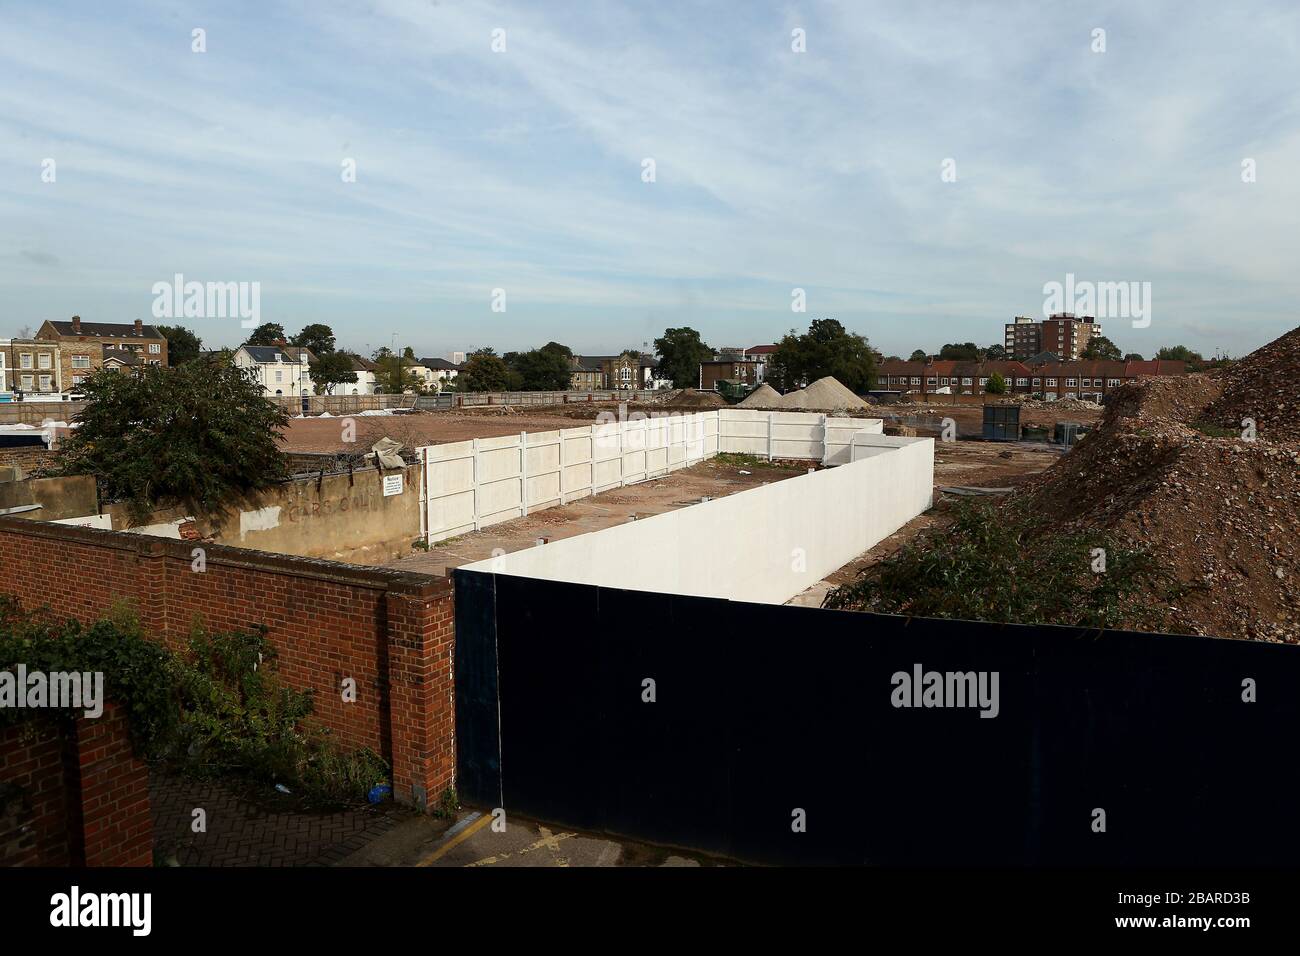 Vue générale des travaux de démolition menés à côté de White Hart Lane, où Tottenham Hotspur prévoit un nouveau stade Banque D'Images